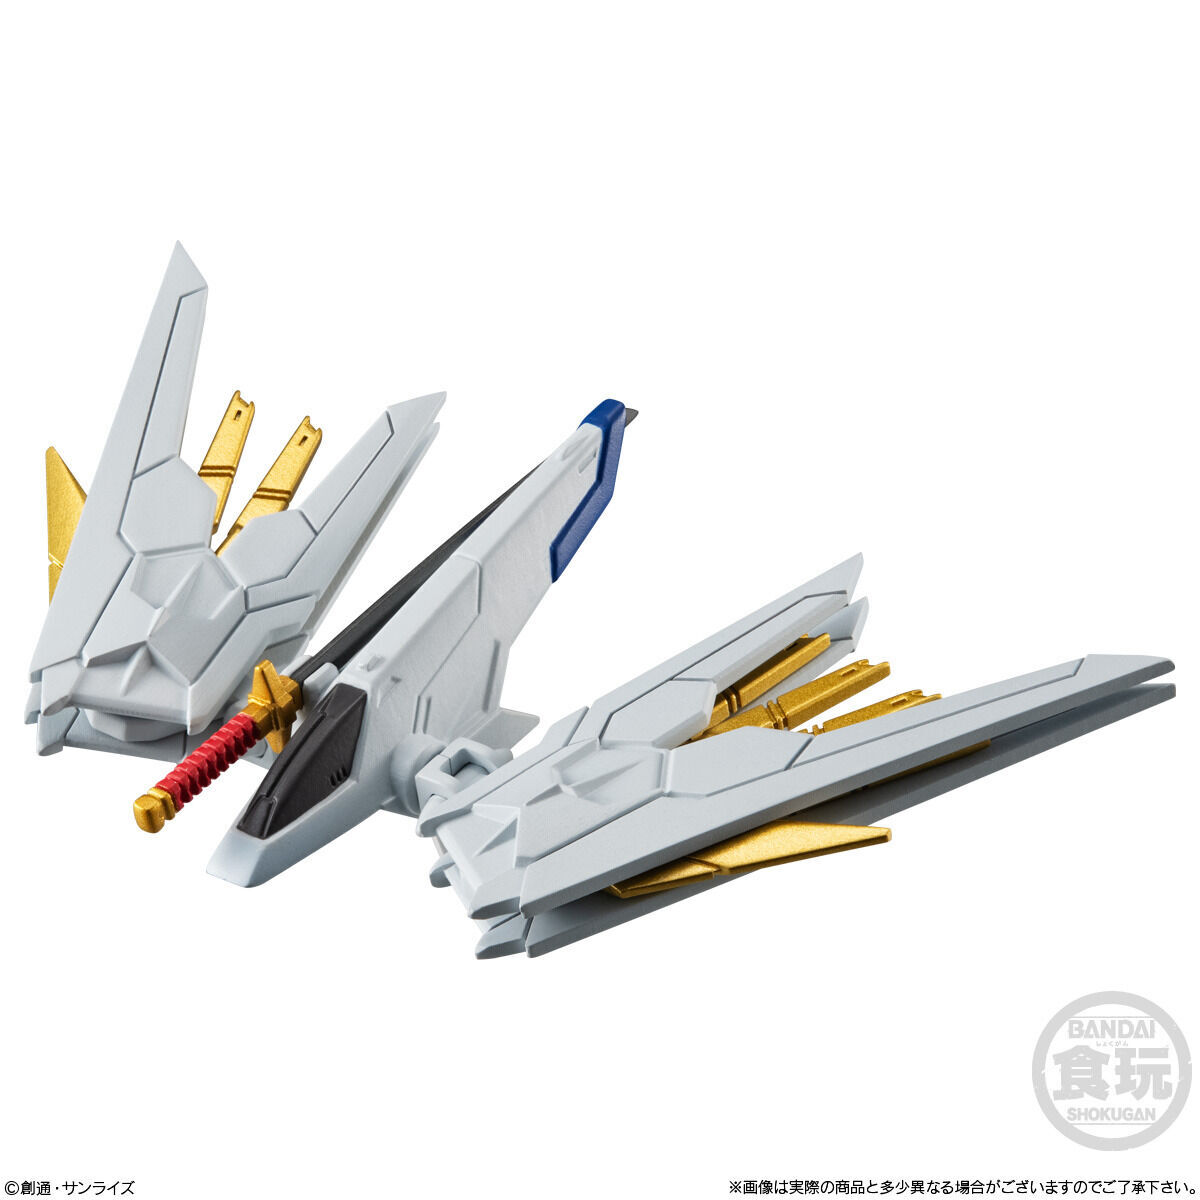 FW Gundam Converge Sharp 25